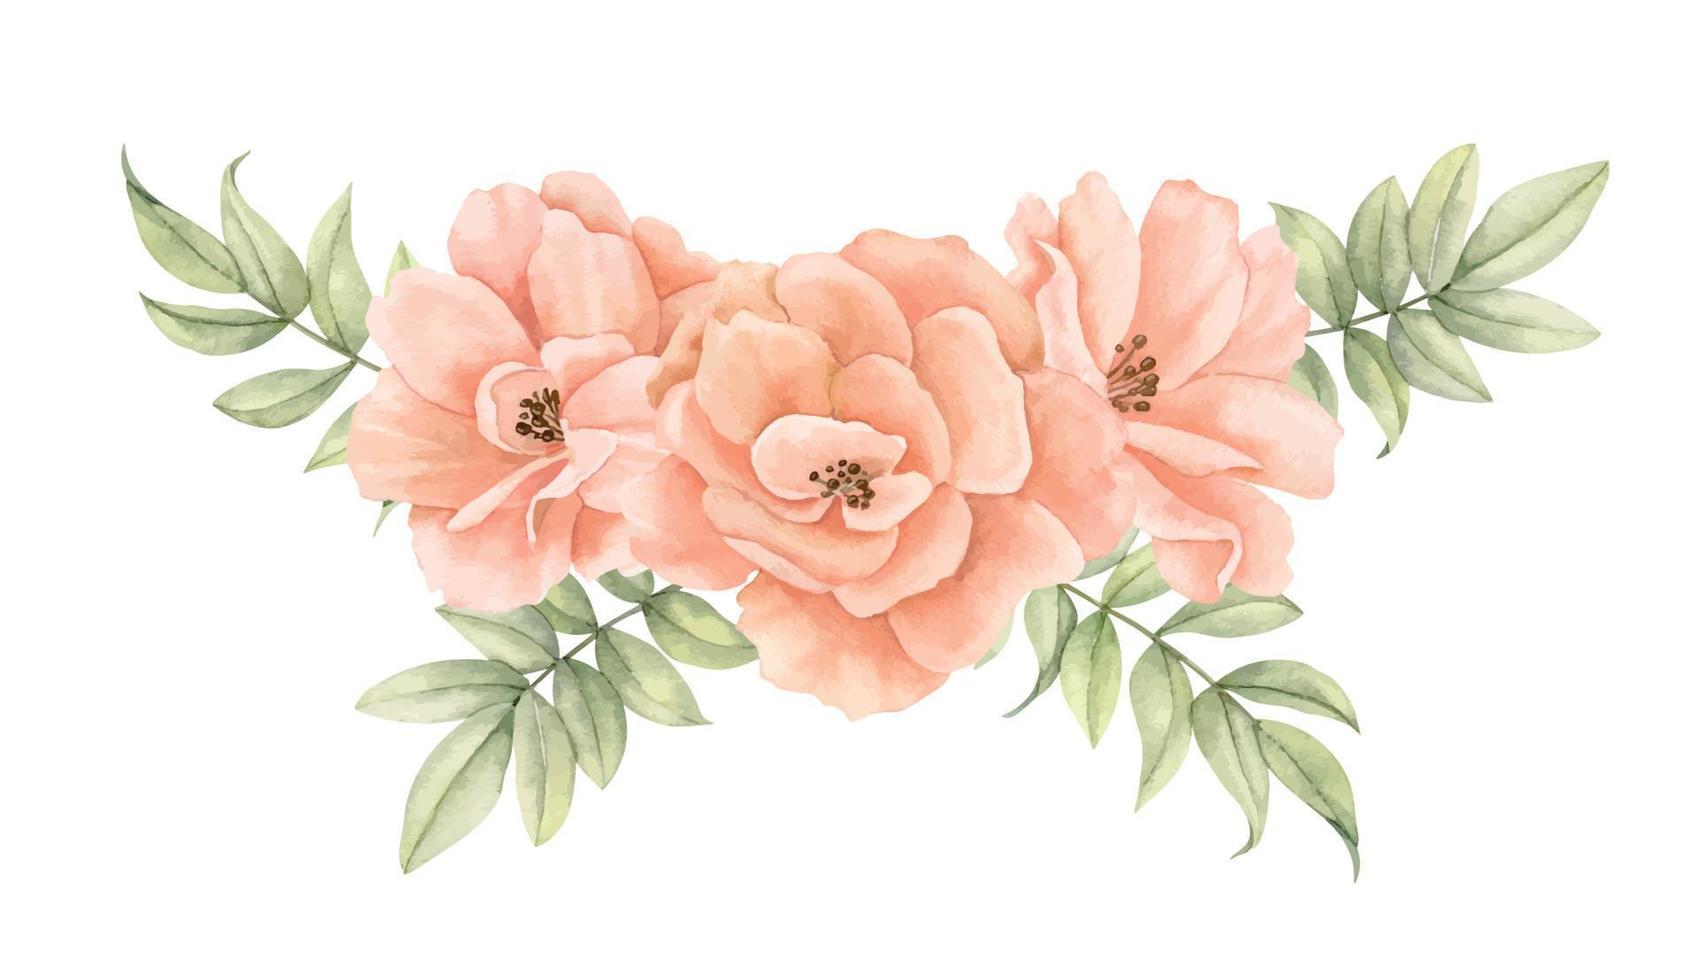 rosas rosa pêssego em aquarela com folhas verdes. ilustração desenhada à mão de buquê floral em tons pastéis cremosos em fundo isolado. desenho de flores delicadas para convites ou cartões de casamento vetor